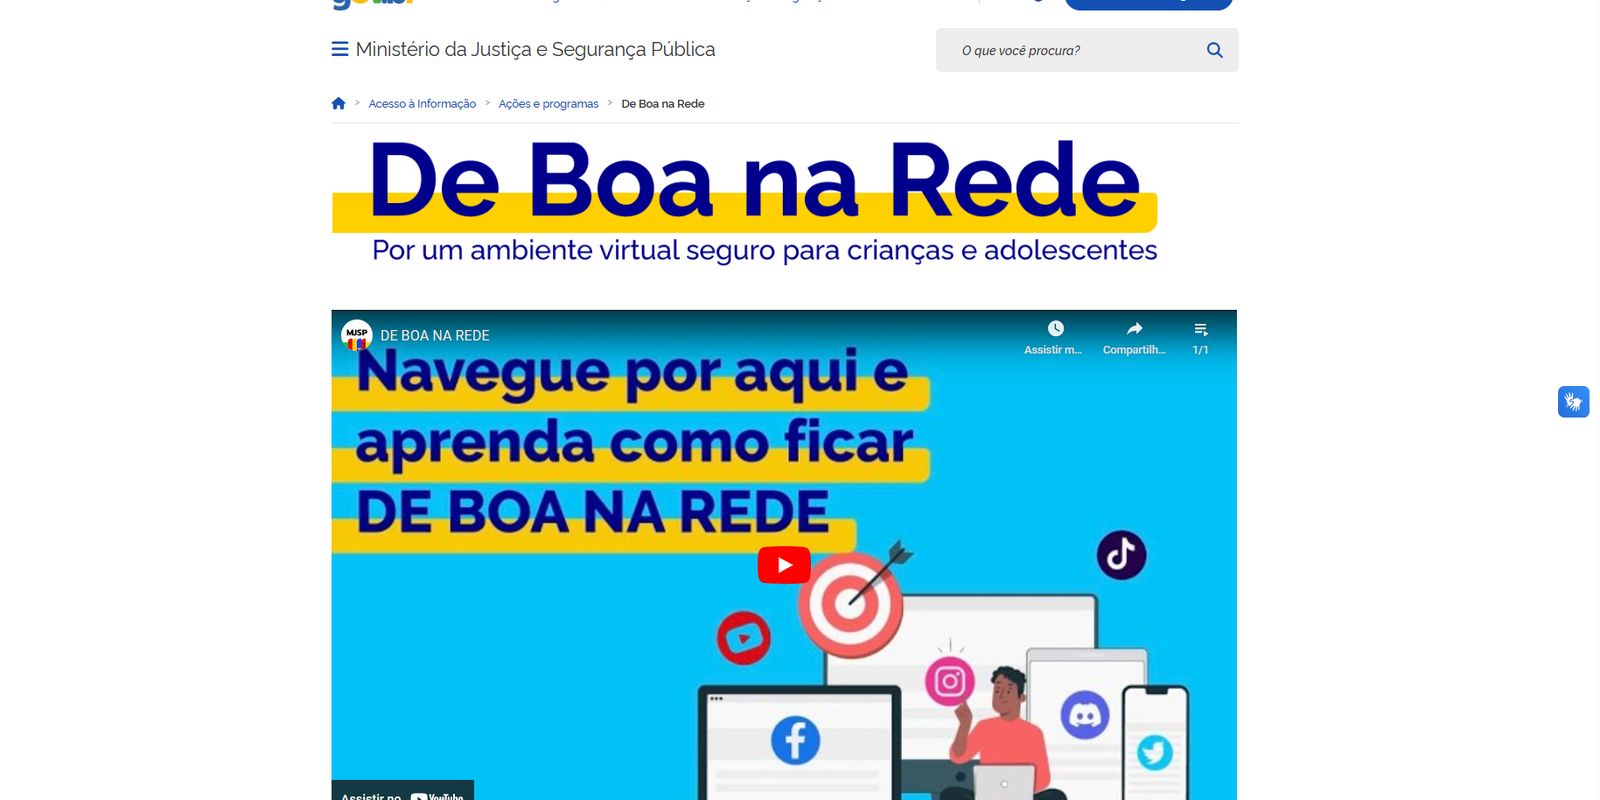 Brasil ajuda kall discord (ou outra plataforma de conversa